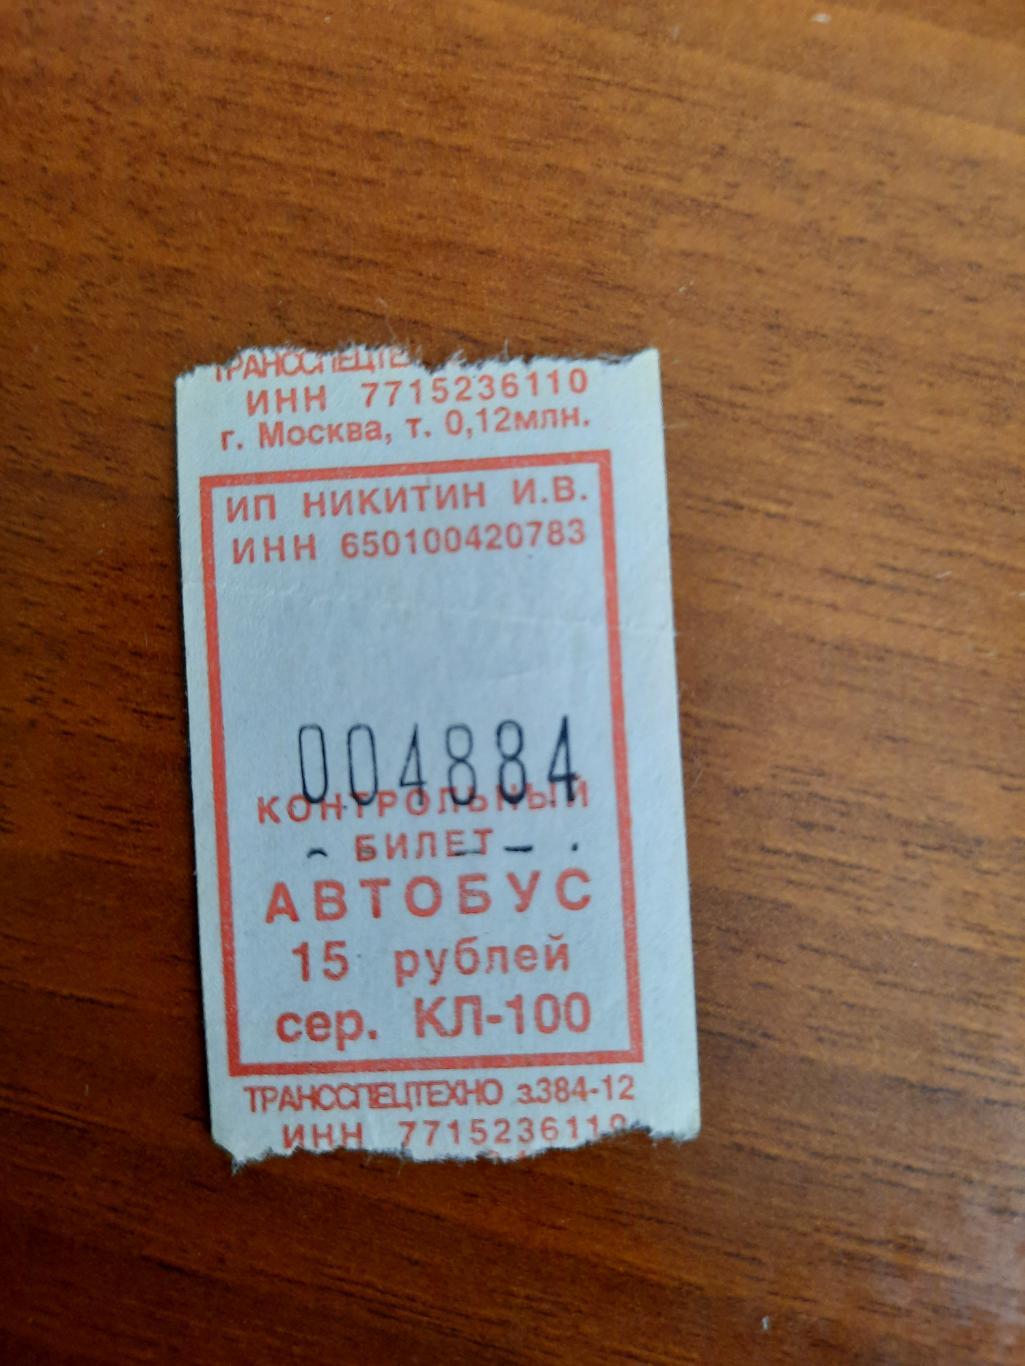 Автобусный билет с интересным номером 004884